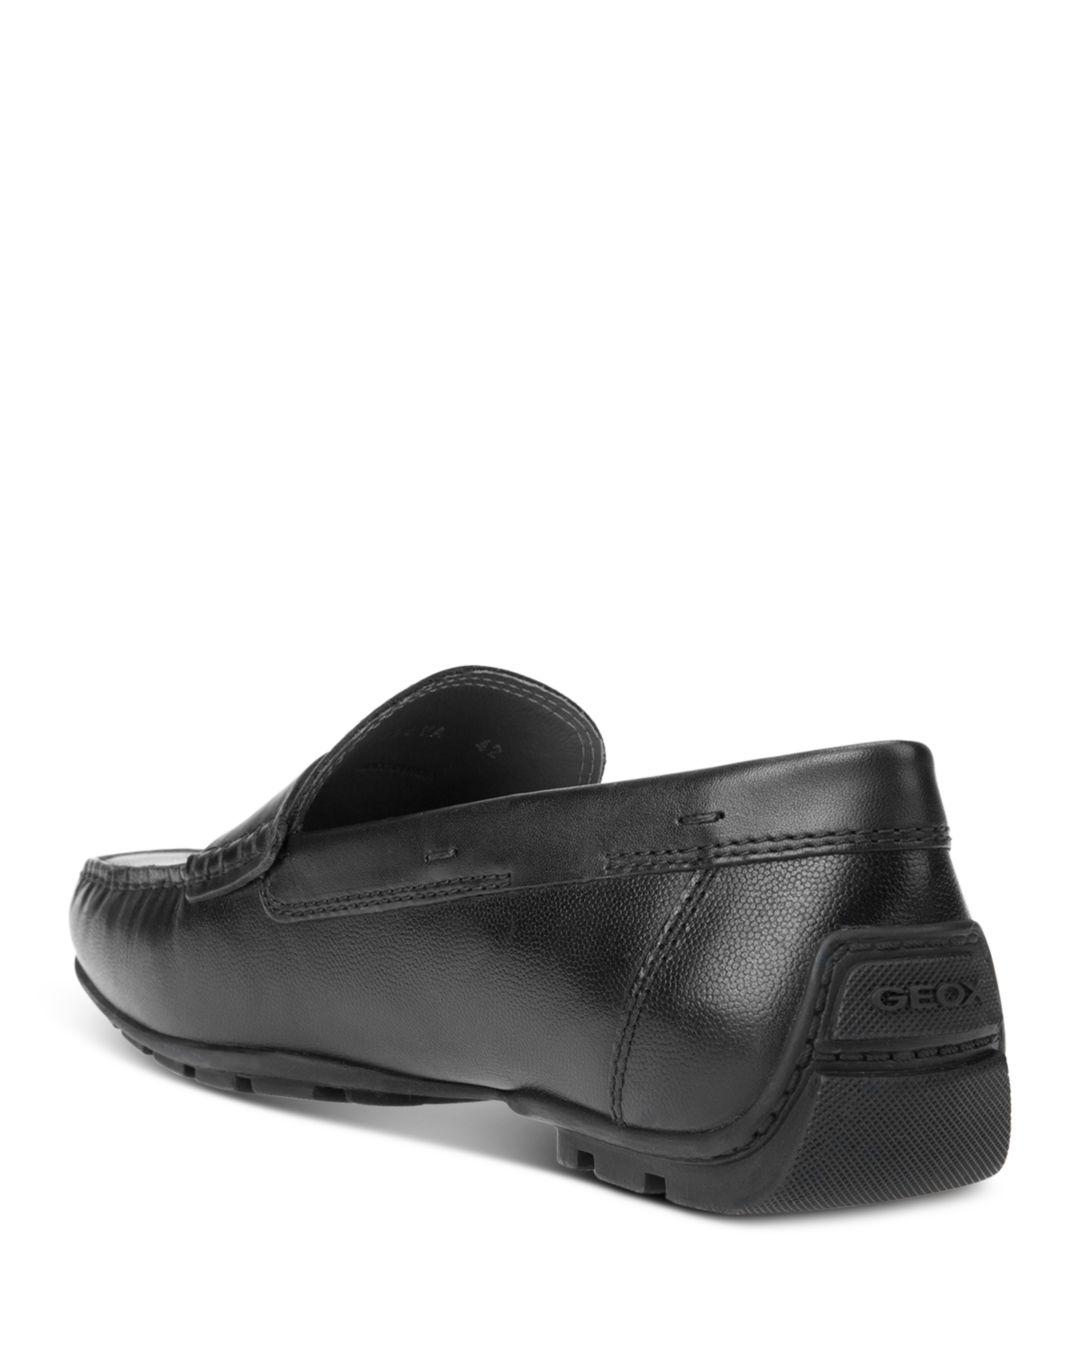 Geox Men's u Moner Mocassin Slip on penny Loafer shoes 2Fit A Black Leather 